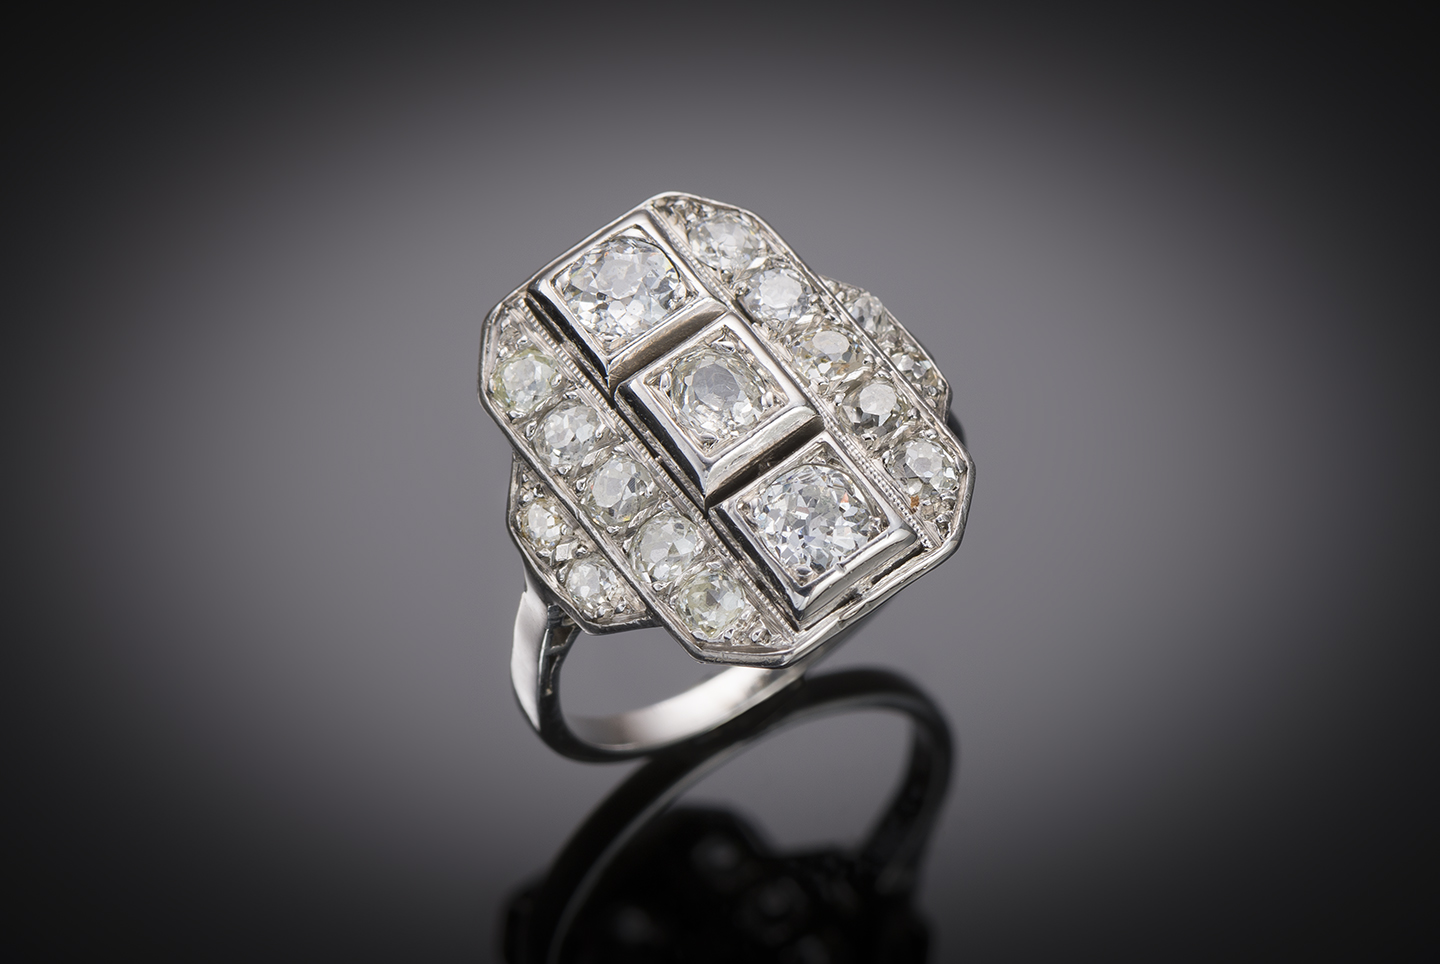 Bague Art déco diamants (environ 1,30 carat) en platine. Travail français vers 1930.-1